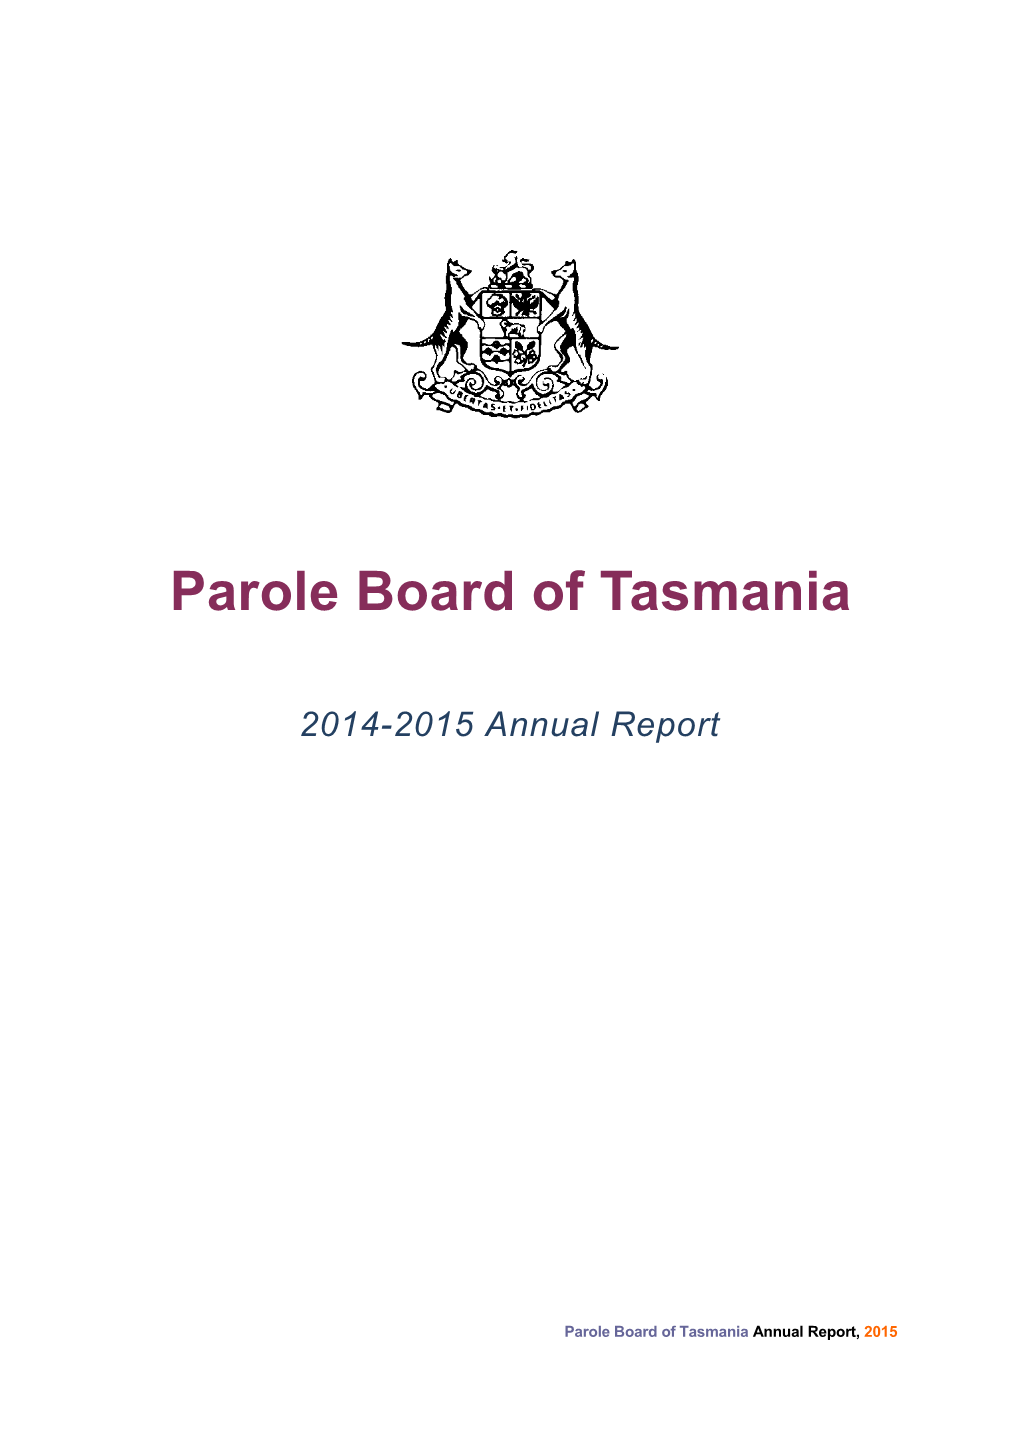 Parole Board of Tasmania Annual Report 2014-15